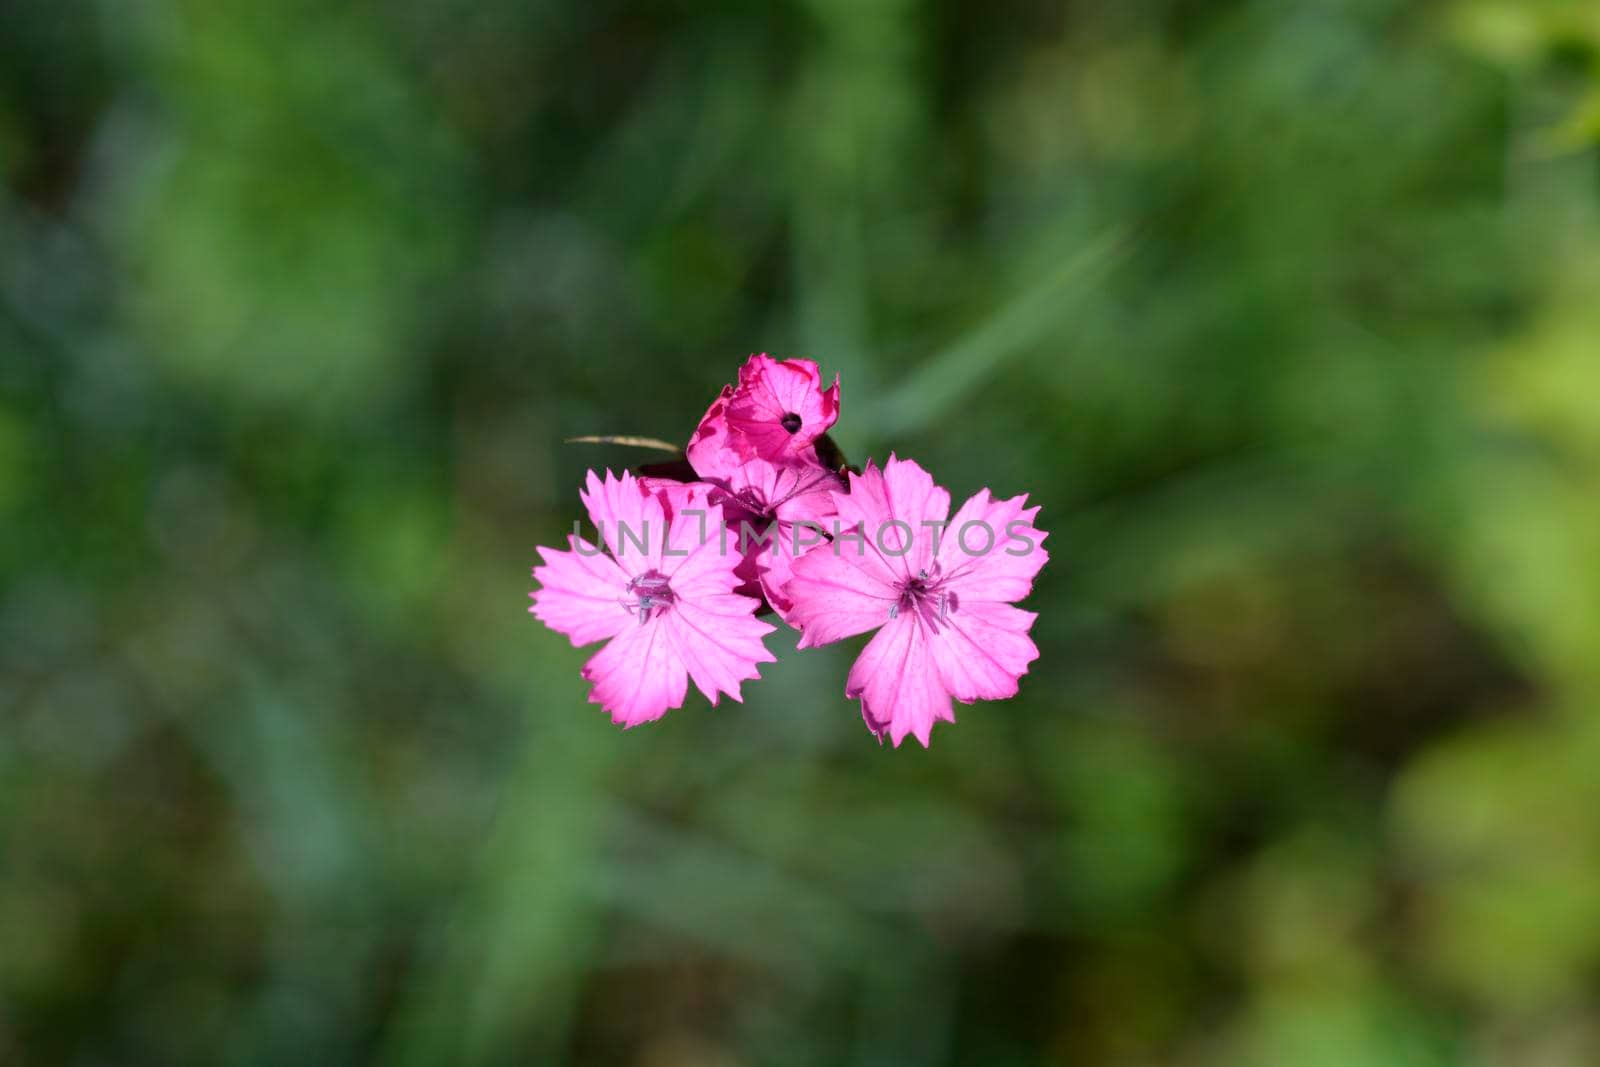 Croatian carnation pink flowers - Latin name - Dianthus giganteus subsp. croaticus